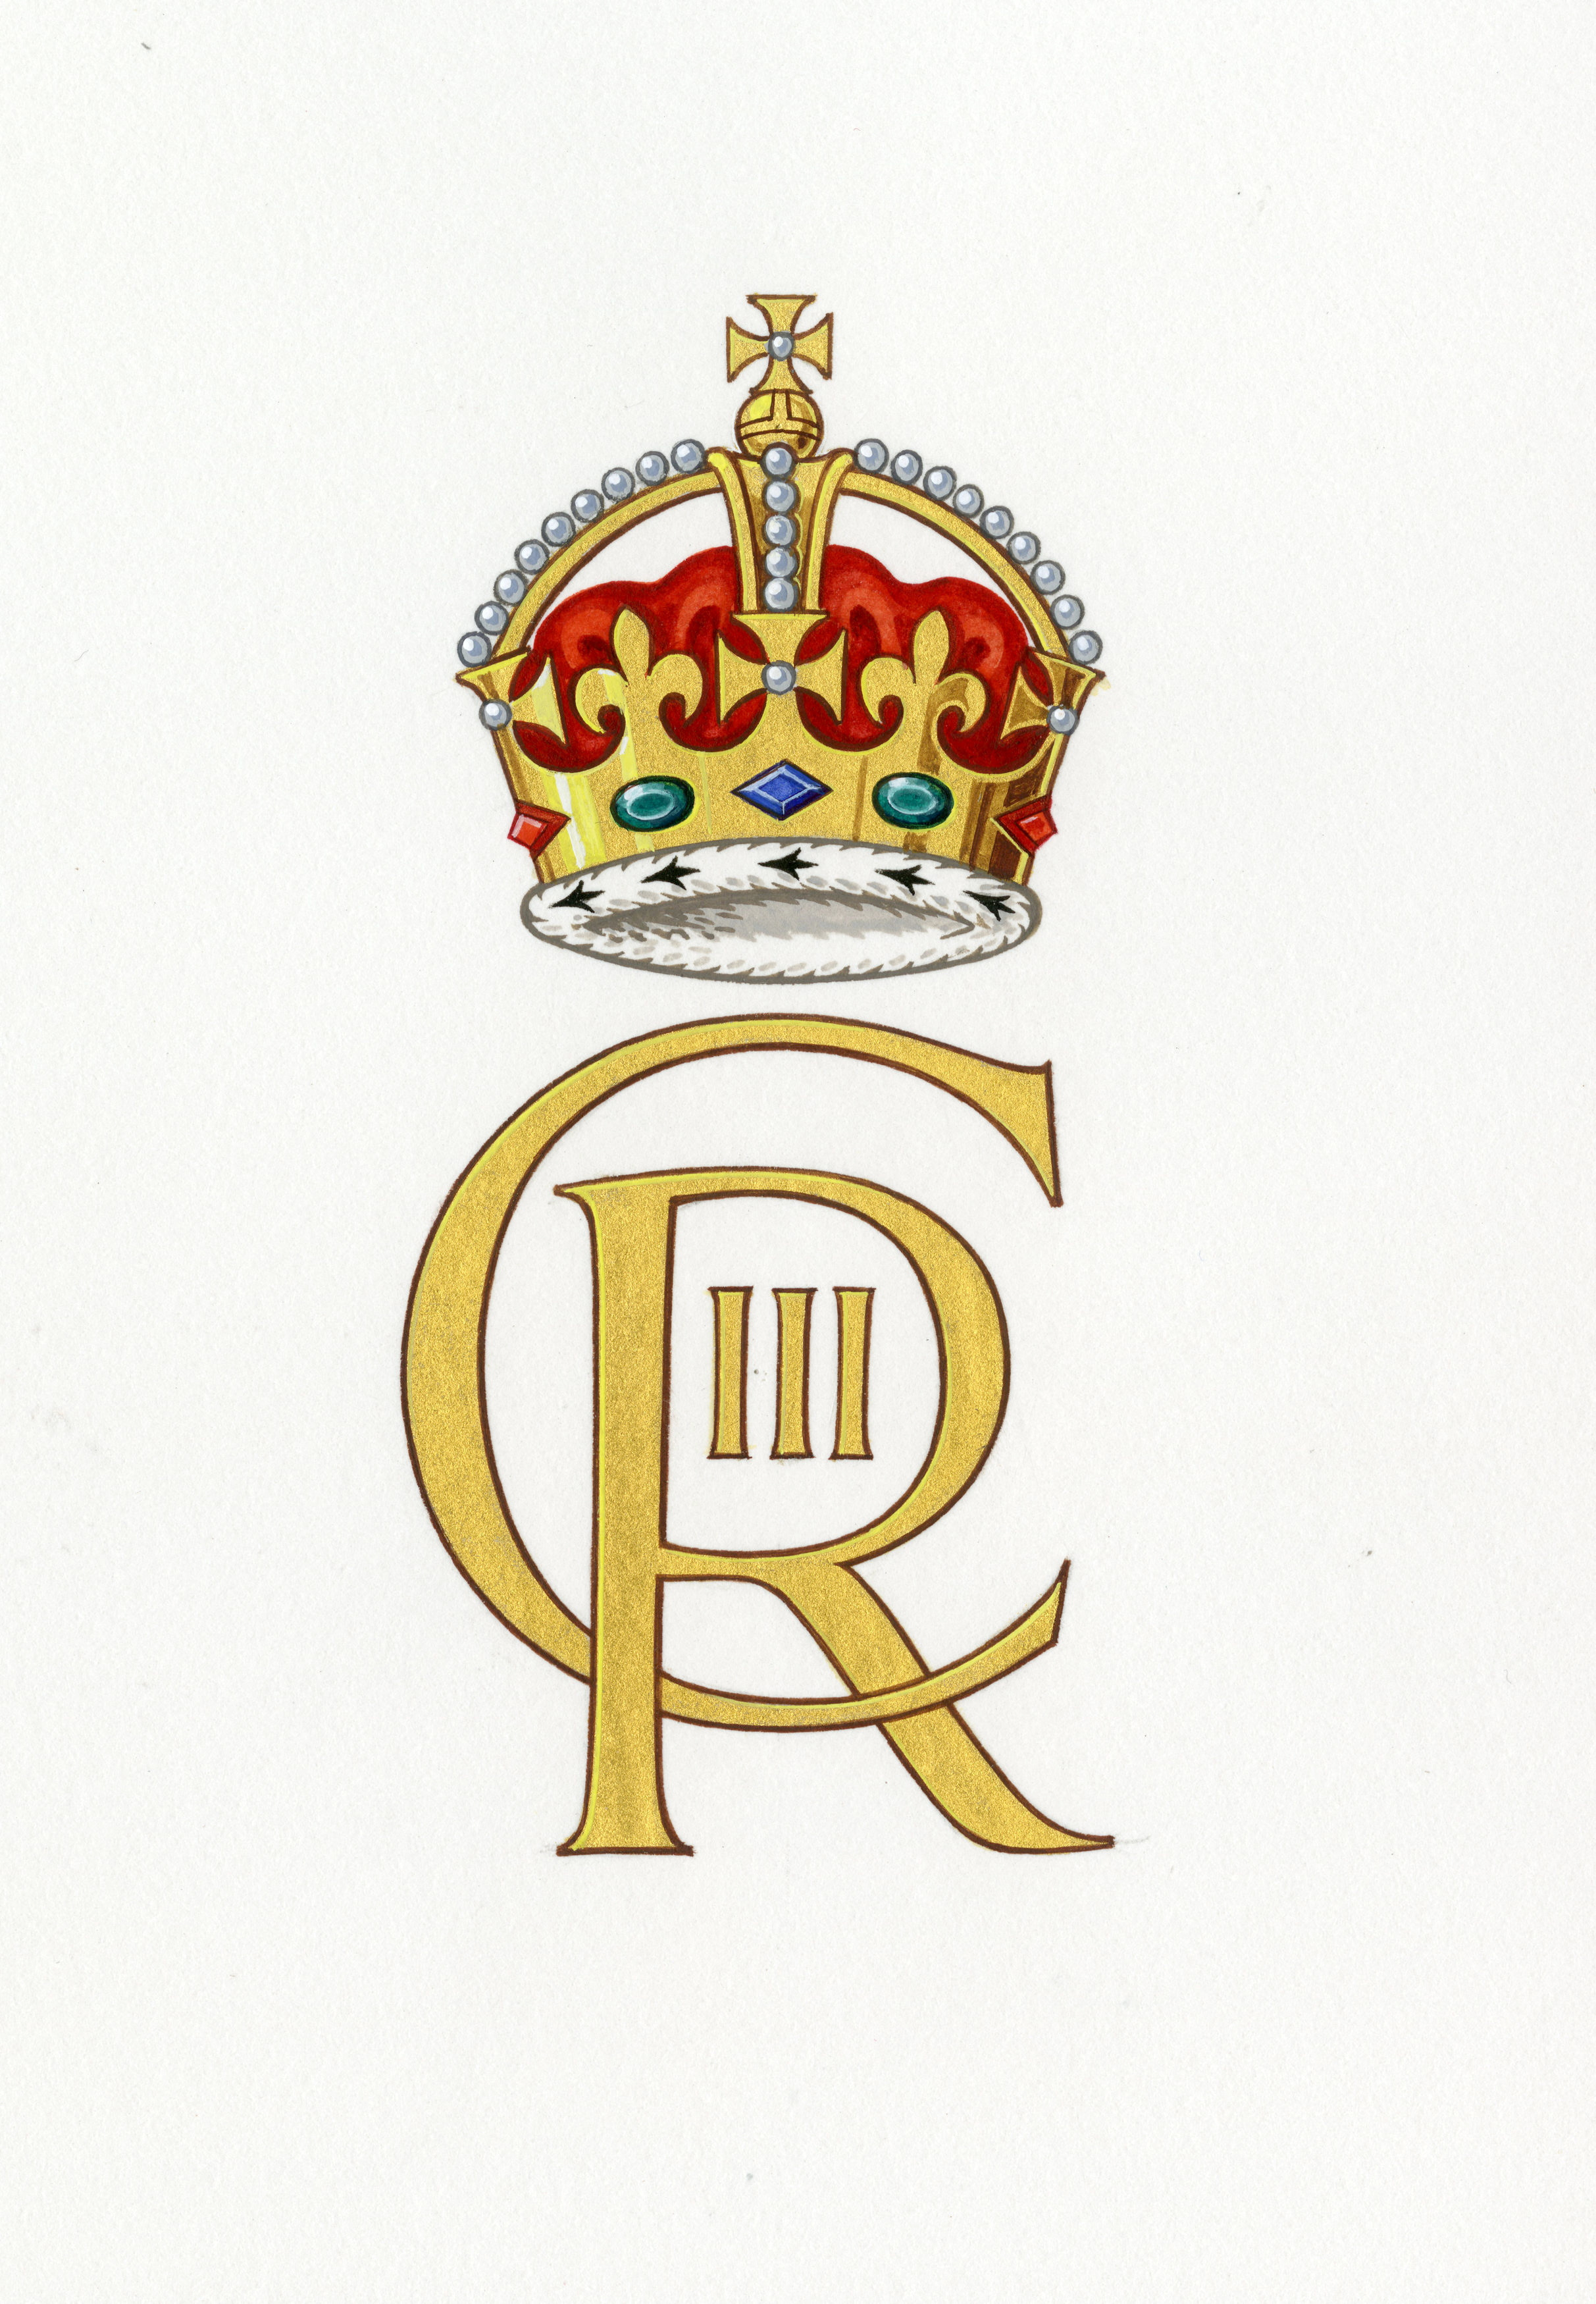 El nuevo emblema se utilizará en toda la Casa Real y en los departamentos gubernamentales (REUTERS)